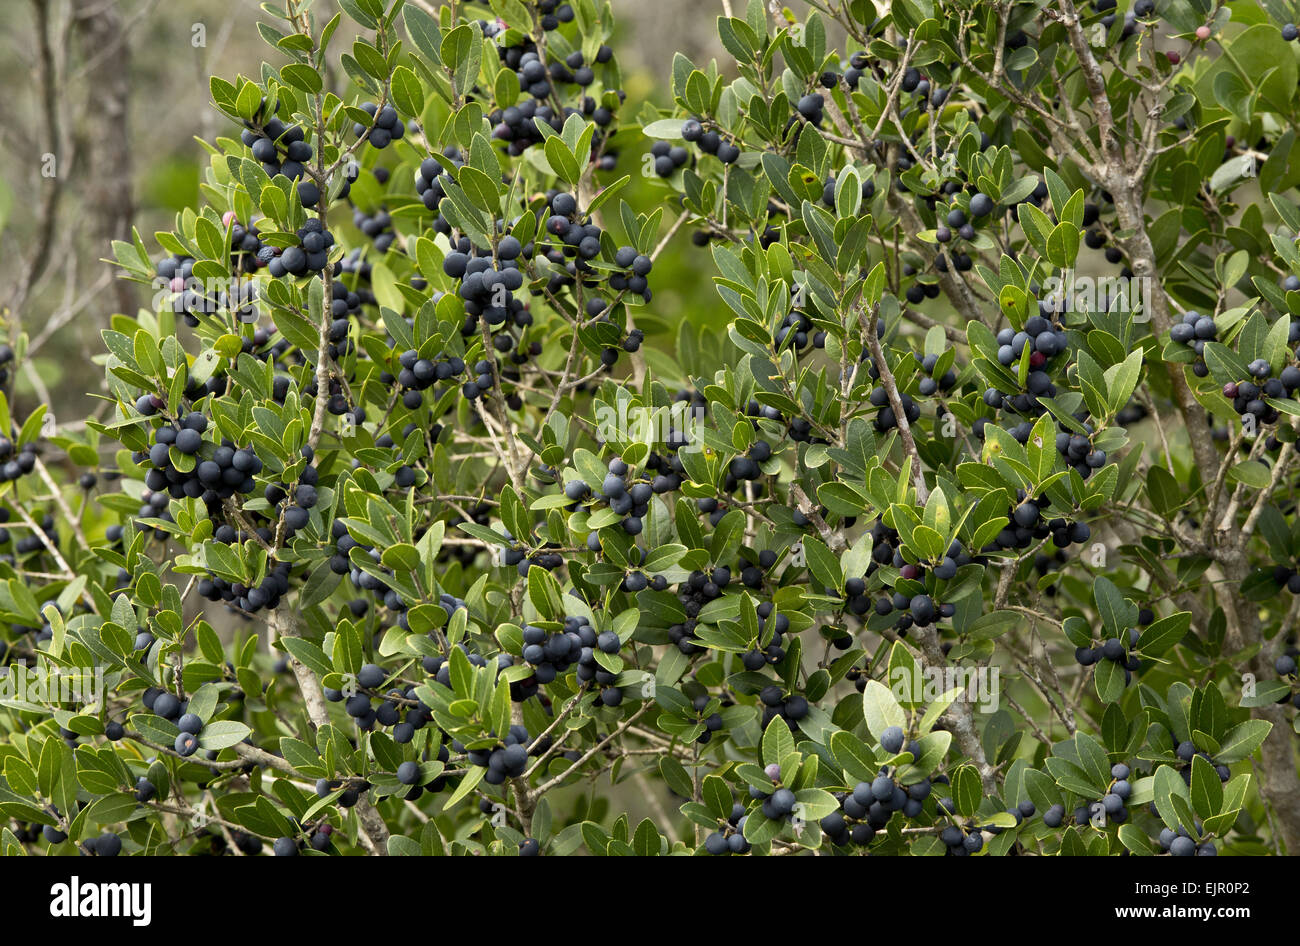 Mediterraneo (Frangola Rhamnus alaternus) nella frutta, sud-ovest della Francia, ottobre Foto Stock